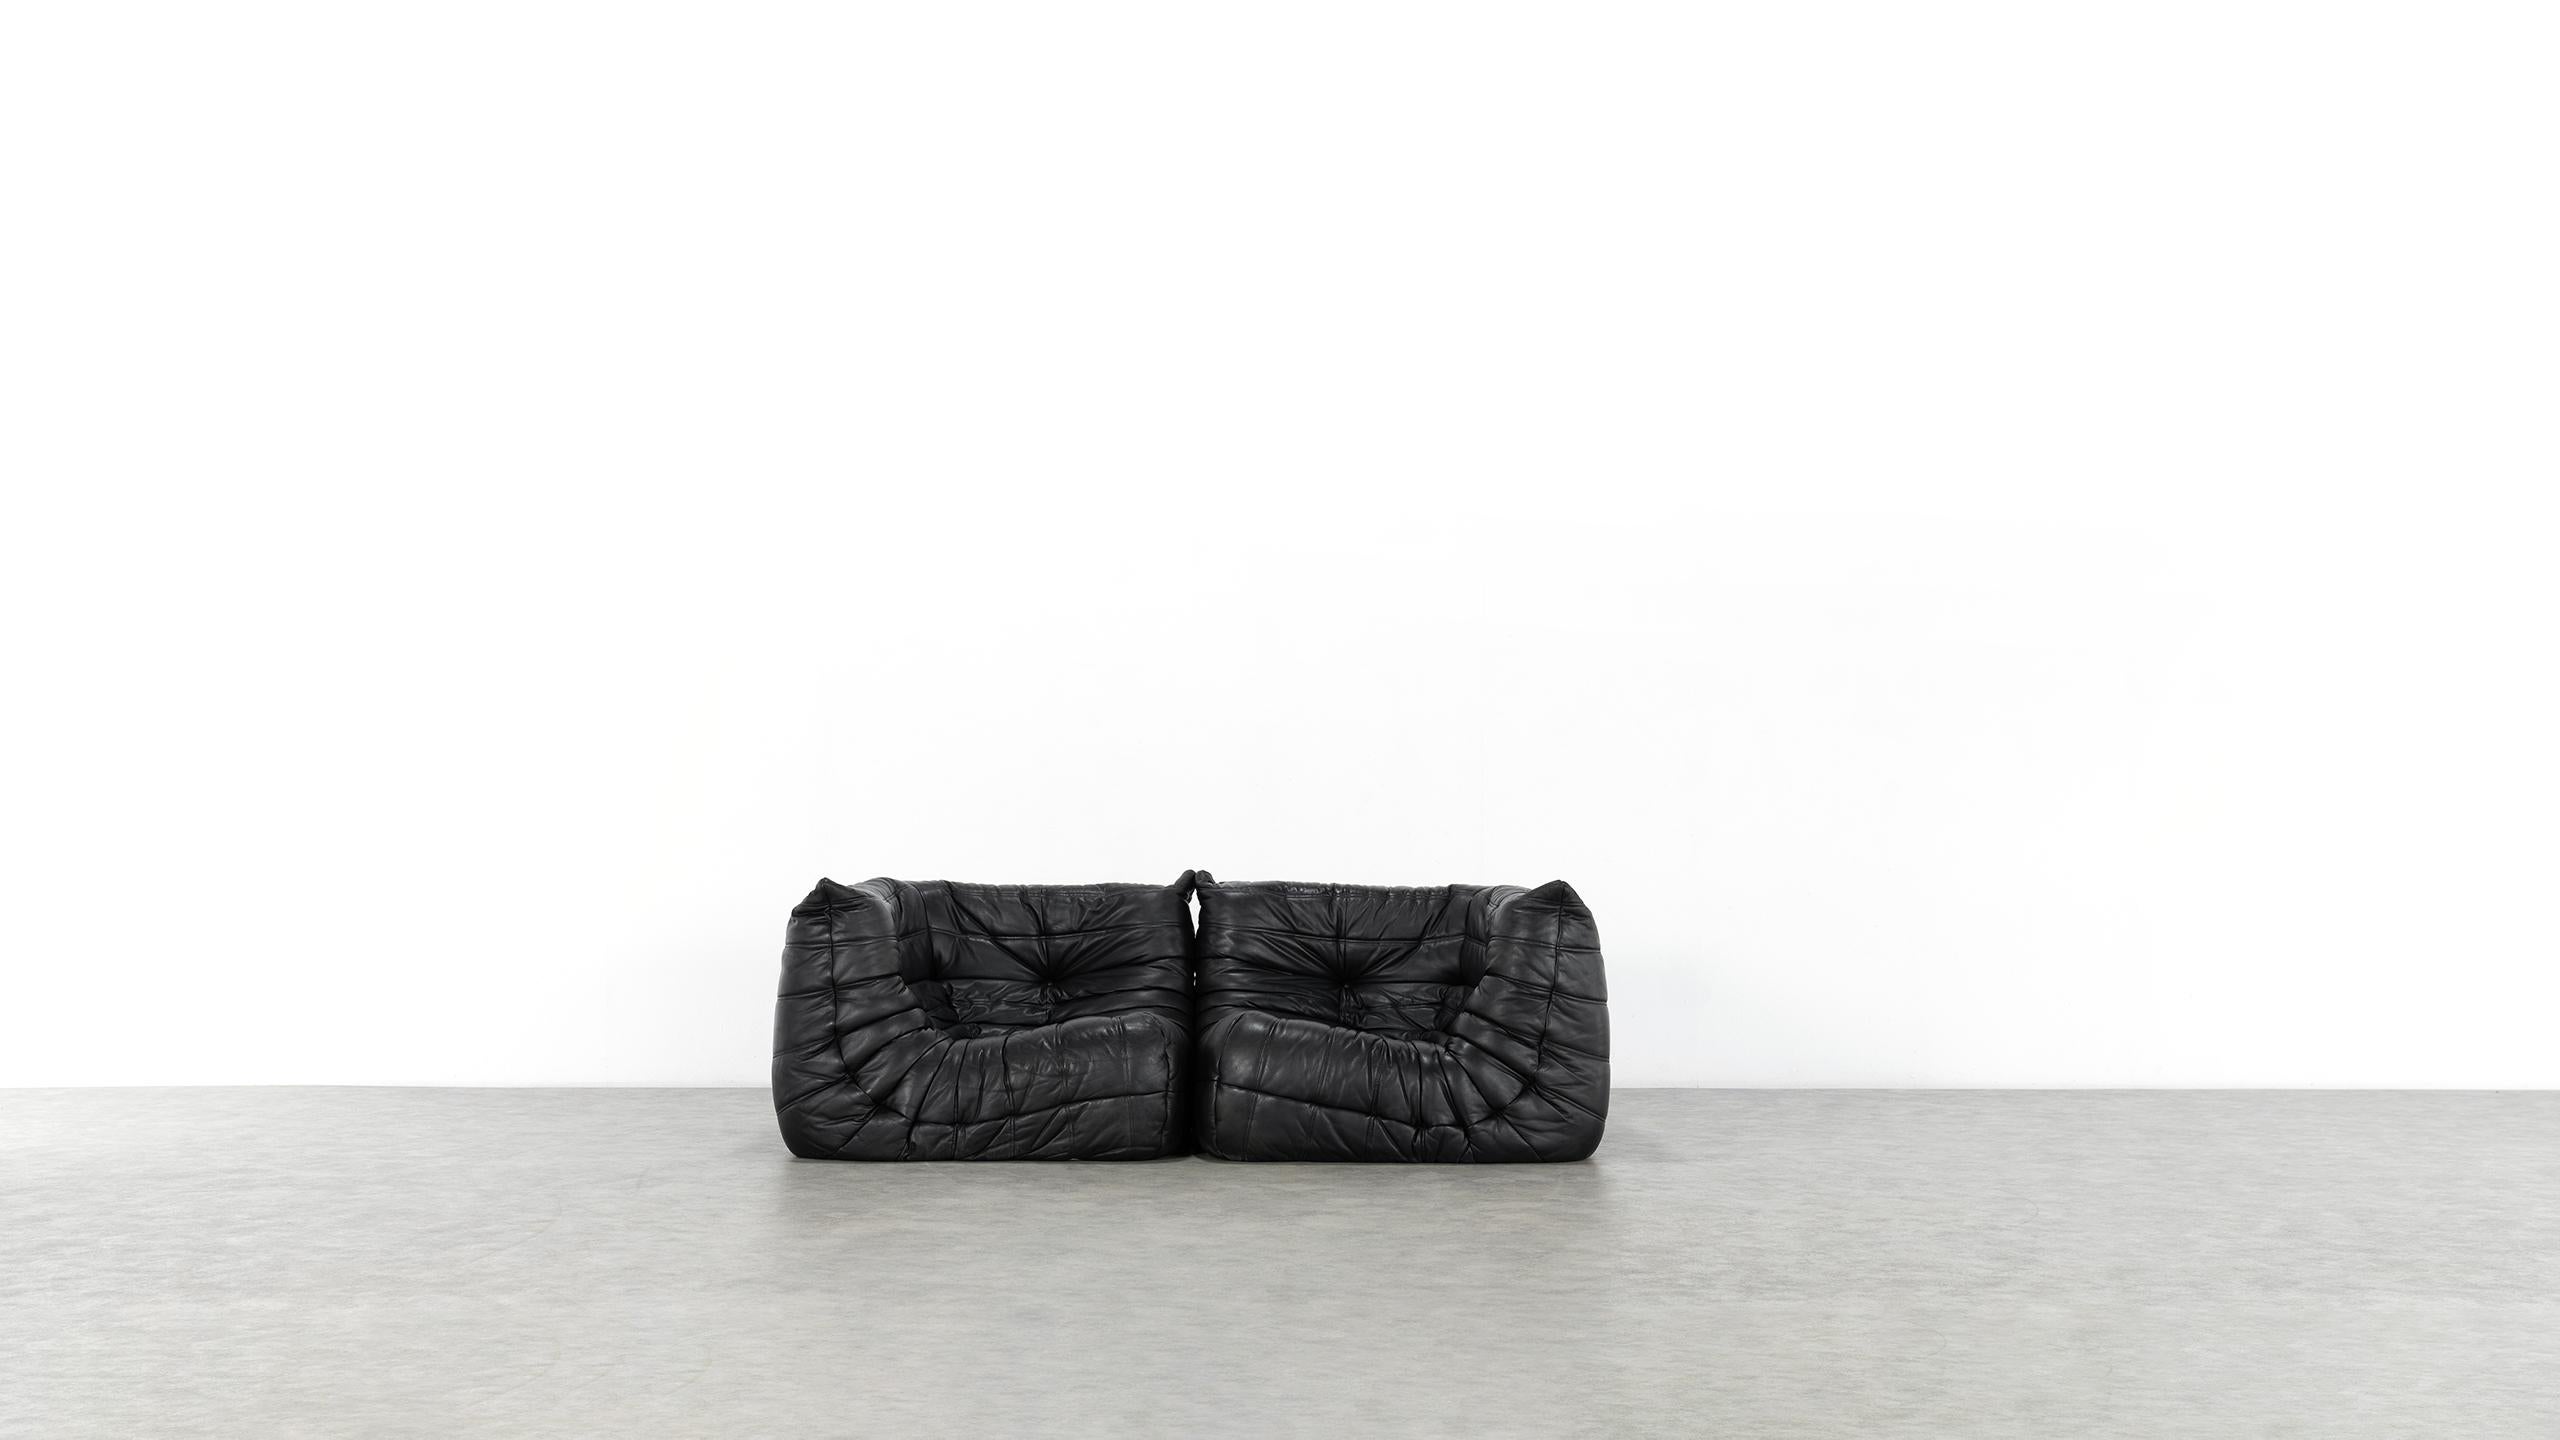 Togo Sofa, 1974 by Michel Ducaroy + Ligne Roset, Giant Landscape, Black Leather 1